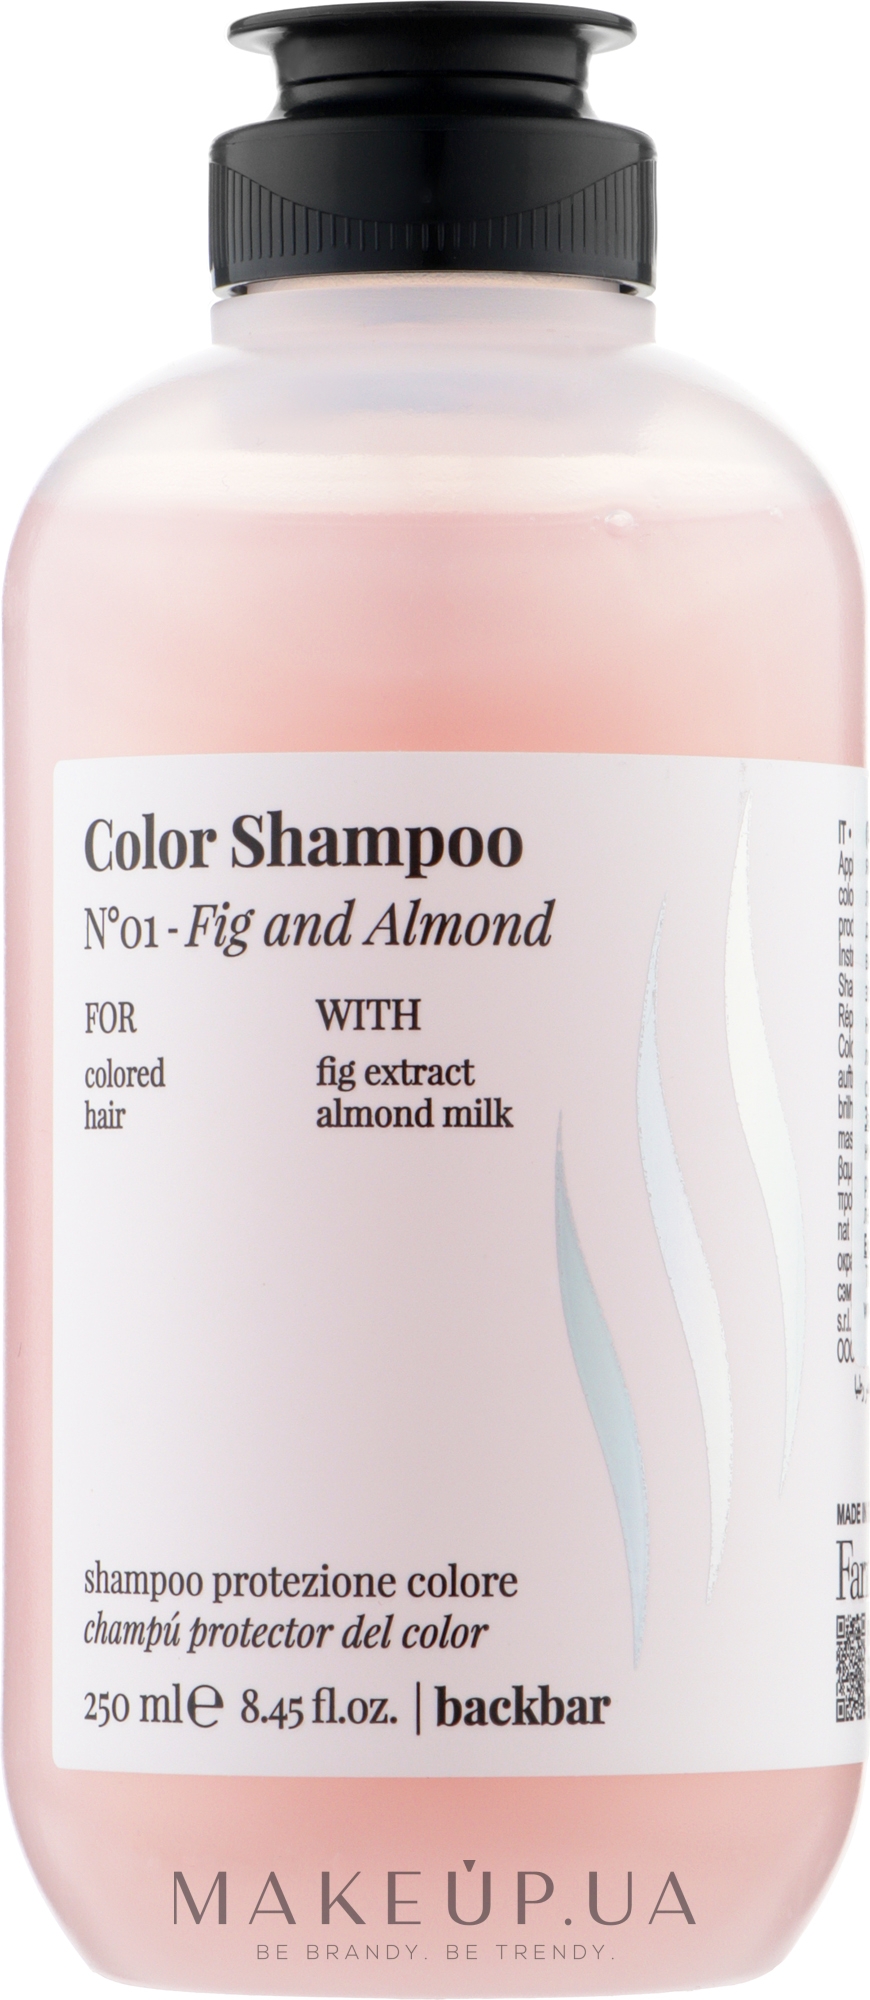 Шампунь для фарбованого волосся "Інжир і мигдаль" - Farmavita Back Bar No1 Color Shampoo Fig and Almond — фото 250ml